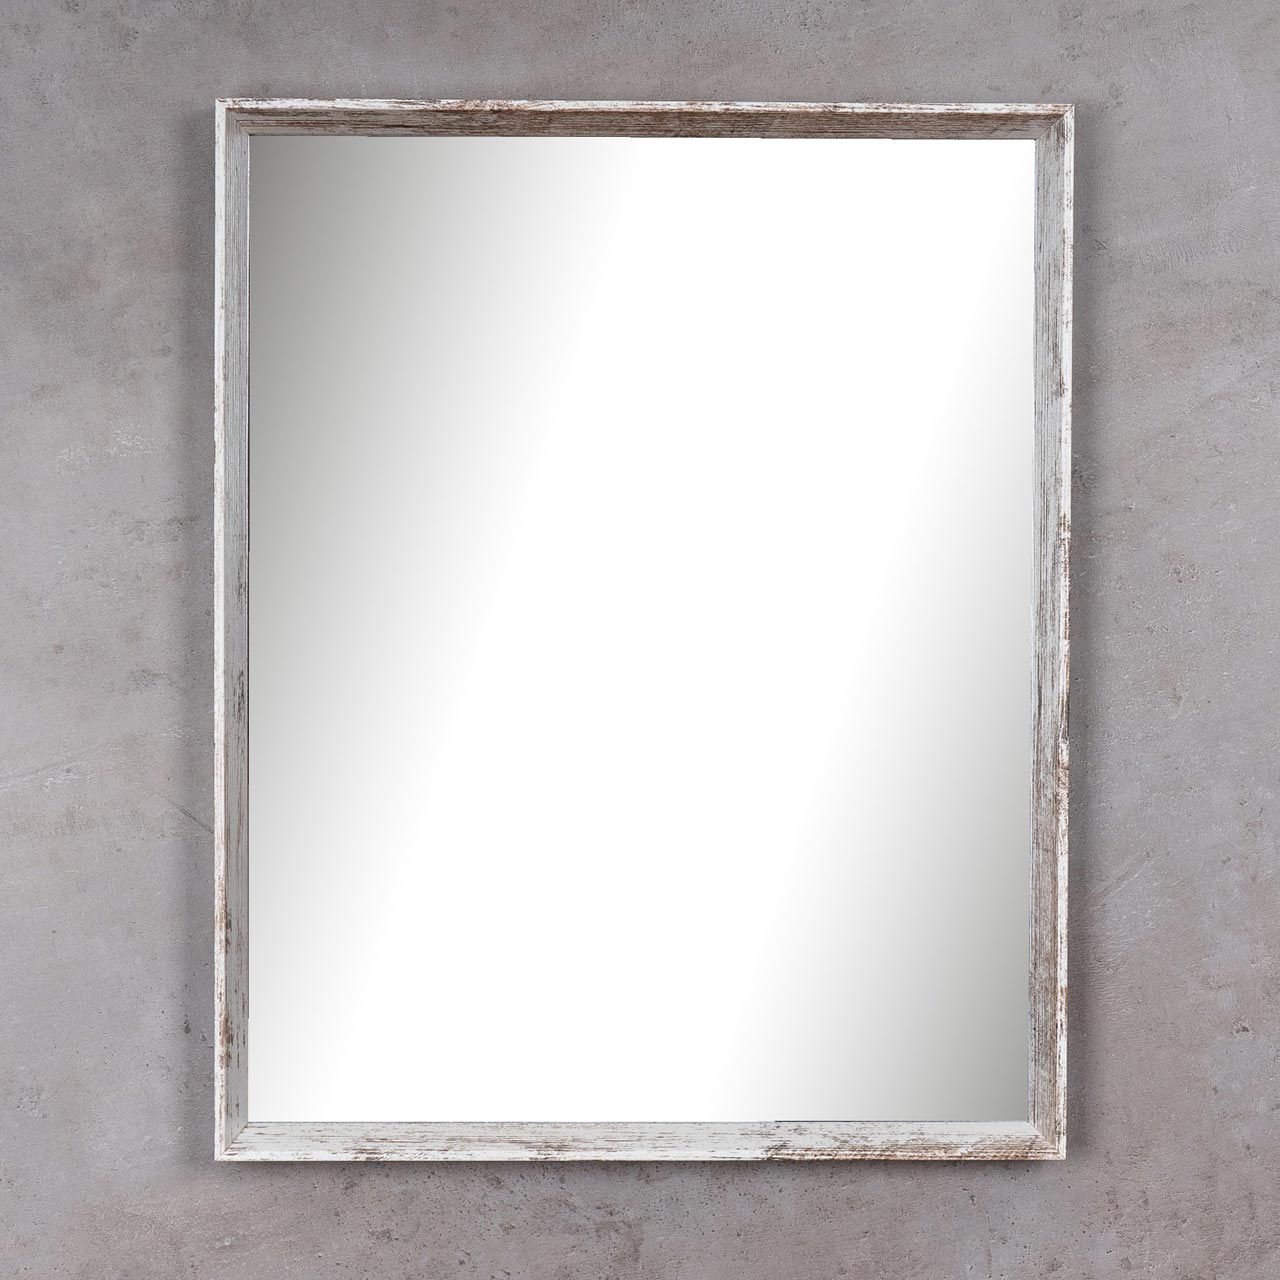 Spiegel Wandspiegel Flurspiegel 42x52cm Vintage Badspiegel Shabby Chic Deko